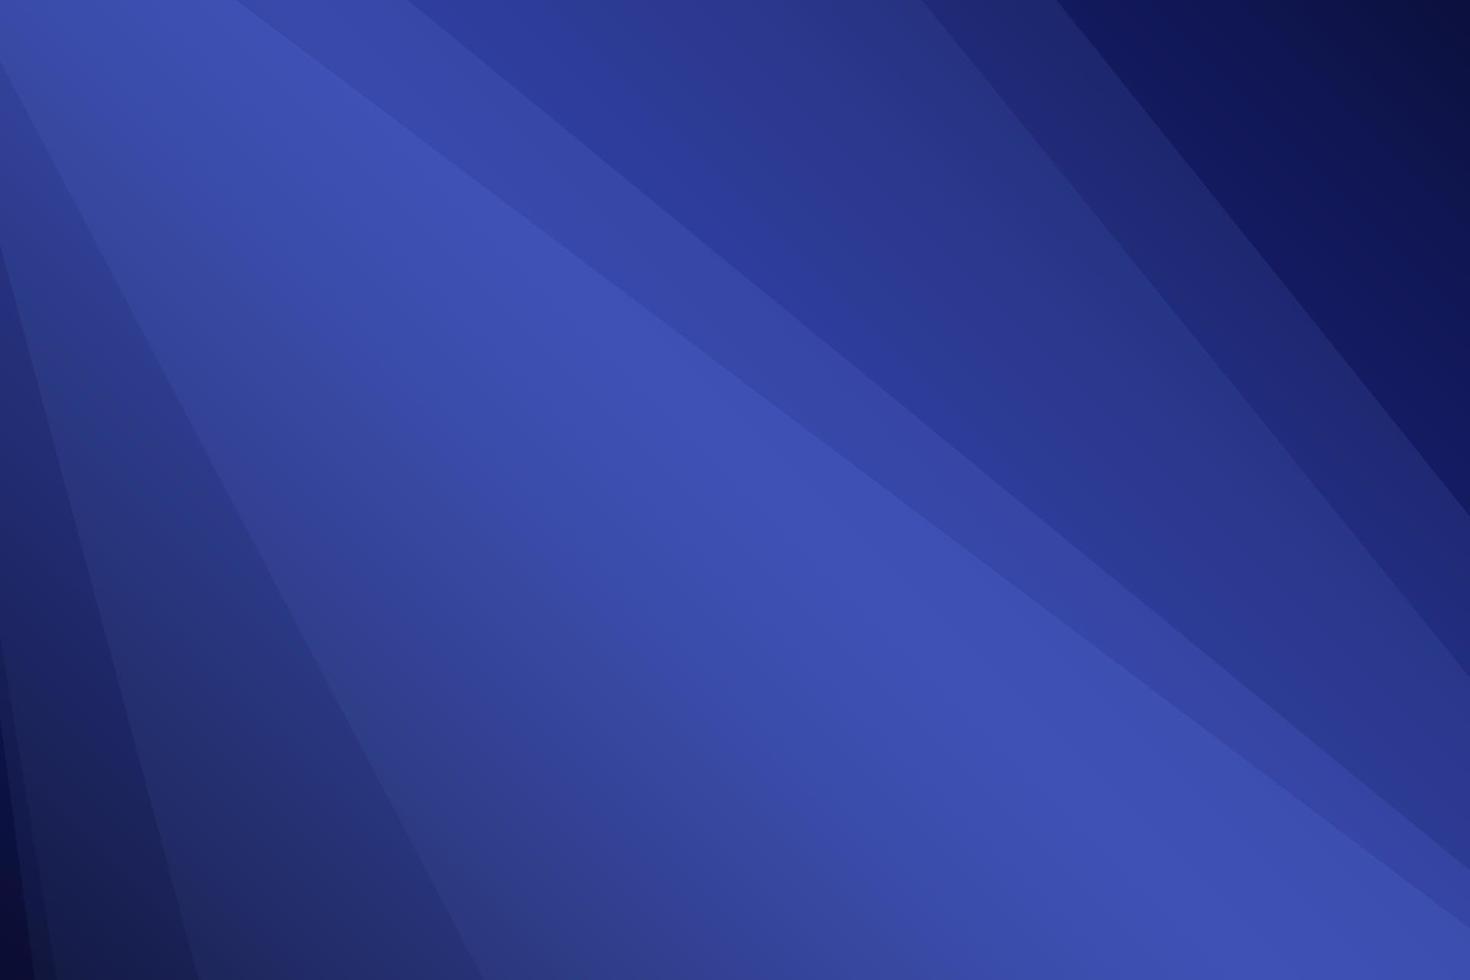 sfondo vettoriale astratto con sovrapposizione lucida blu intenso